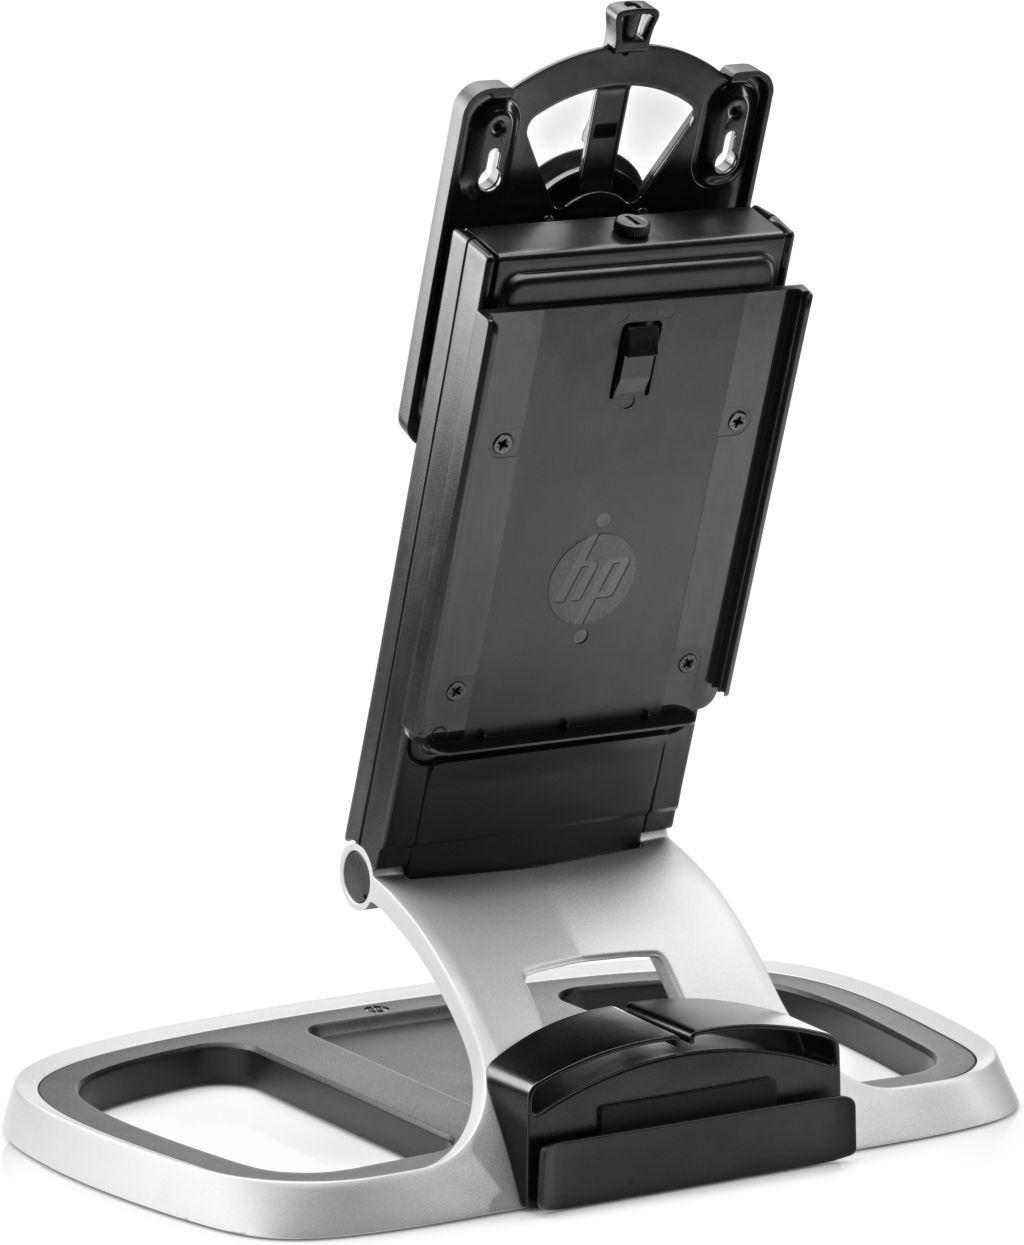 HP VESA-Montagehalterung t310 für vier Displays, Schwarz, Grau